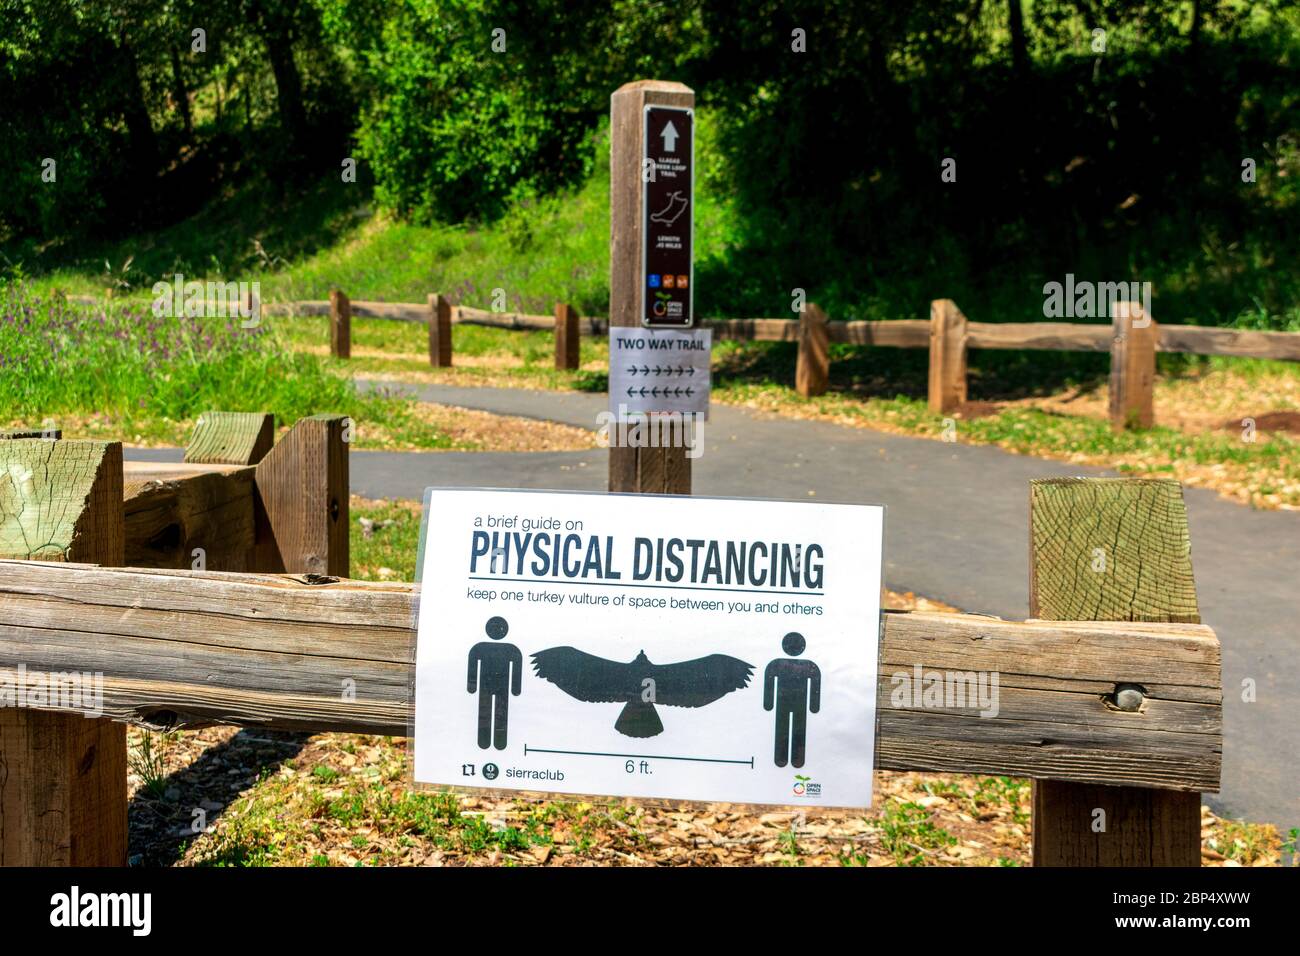 Segno di distanza fisica con avvoltoio tacchino come riferimento pubblicato all'inizio del sentiero escursionistico nel parco - San Jose, California, USA - Aprile, 2020 Foto Stock